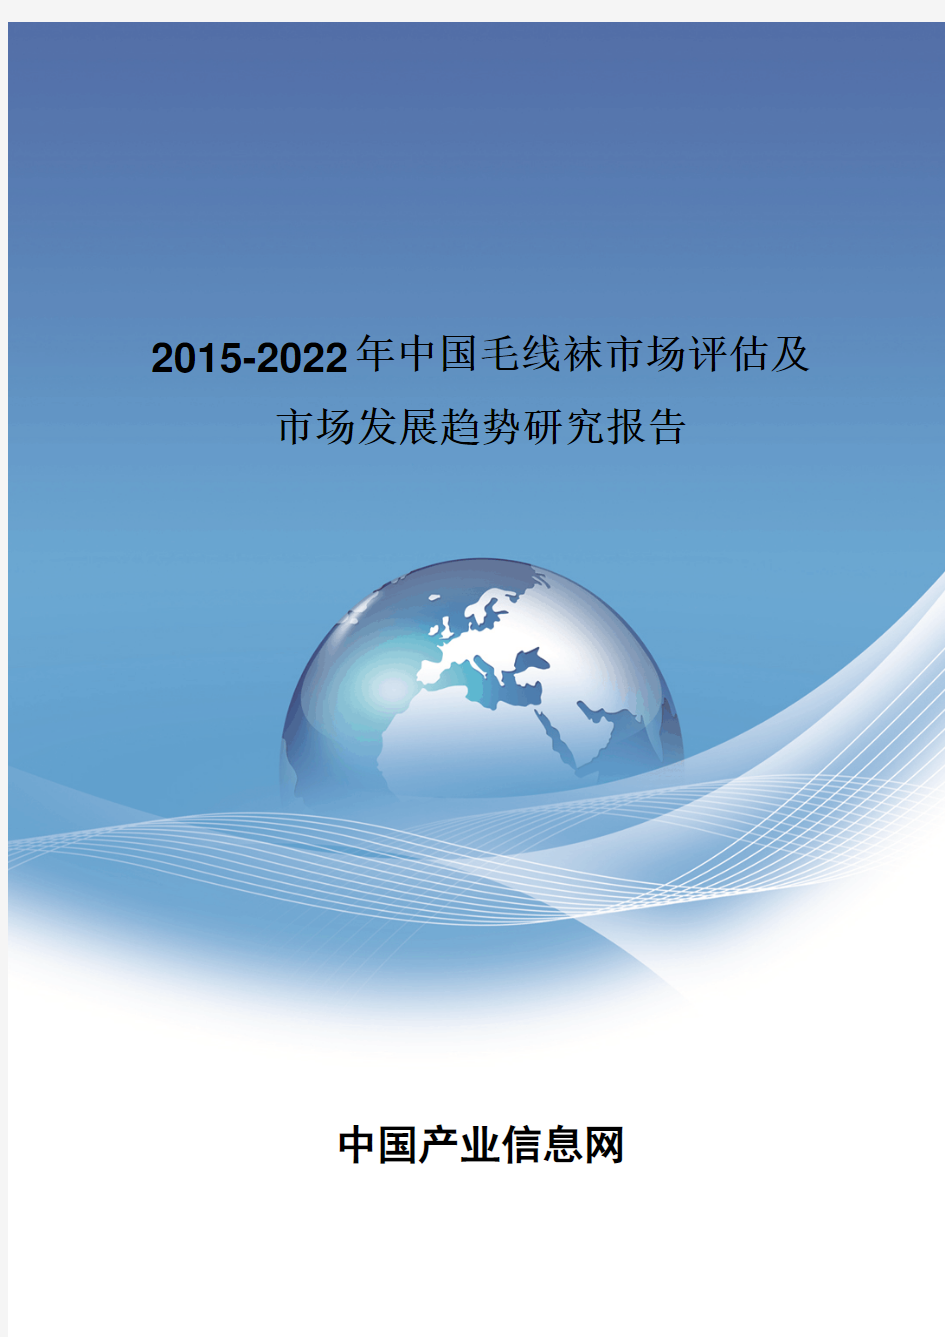 2015-2022年中国毛线袜市场评估报告